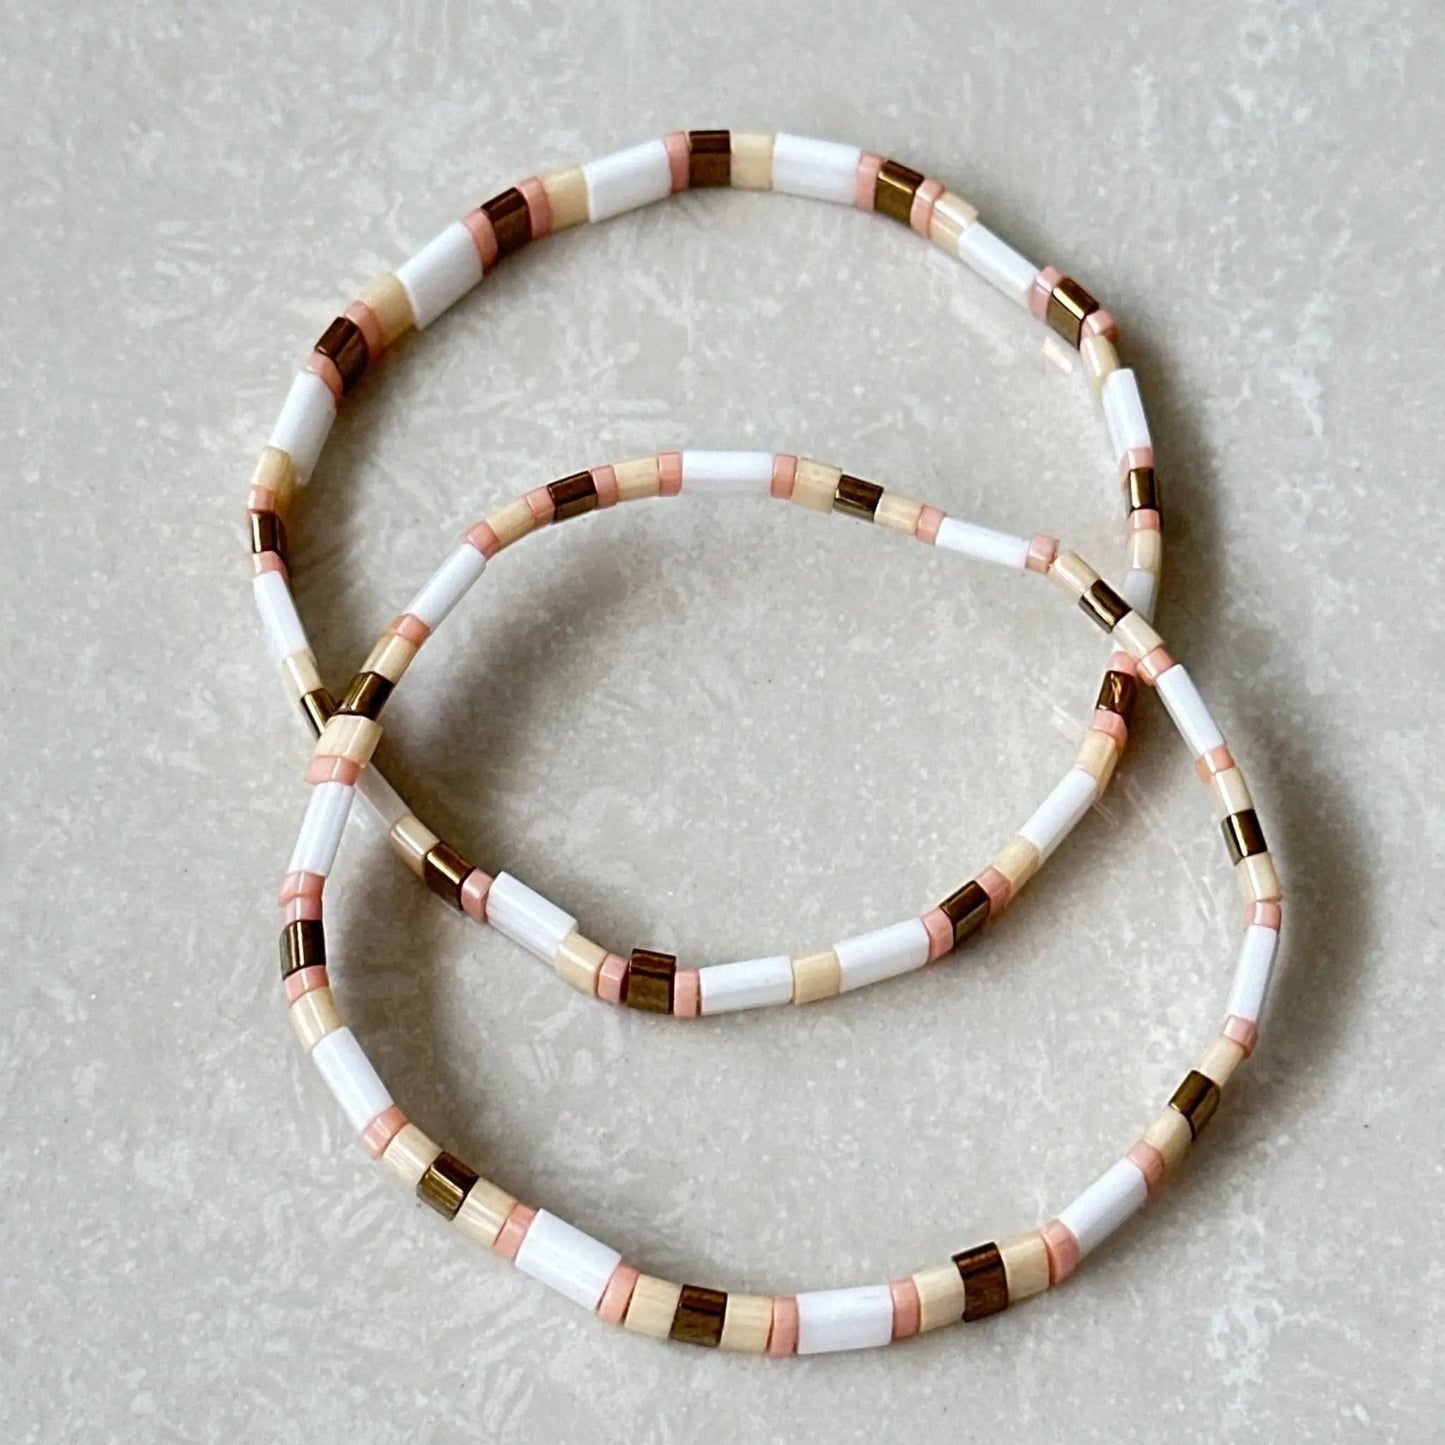 Miyuki Tila Bead Bracelet - Uplift Beads